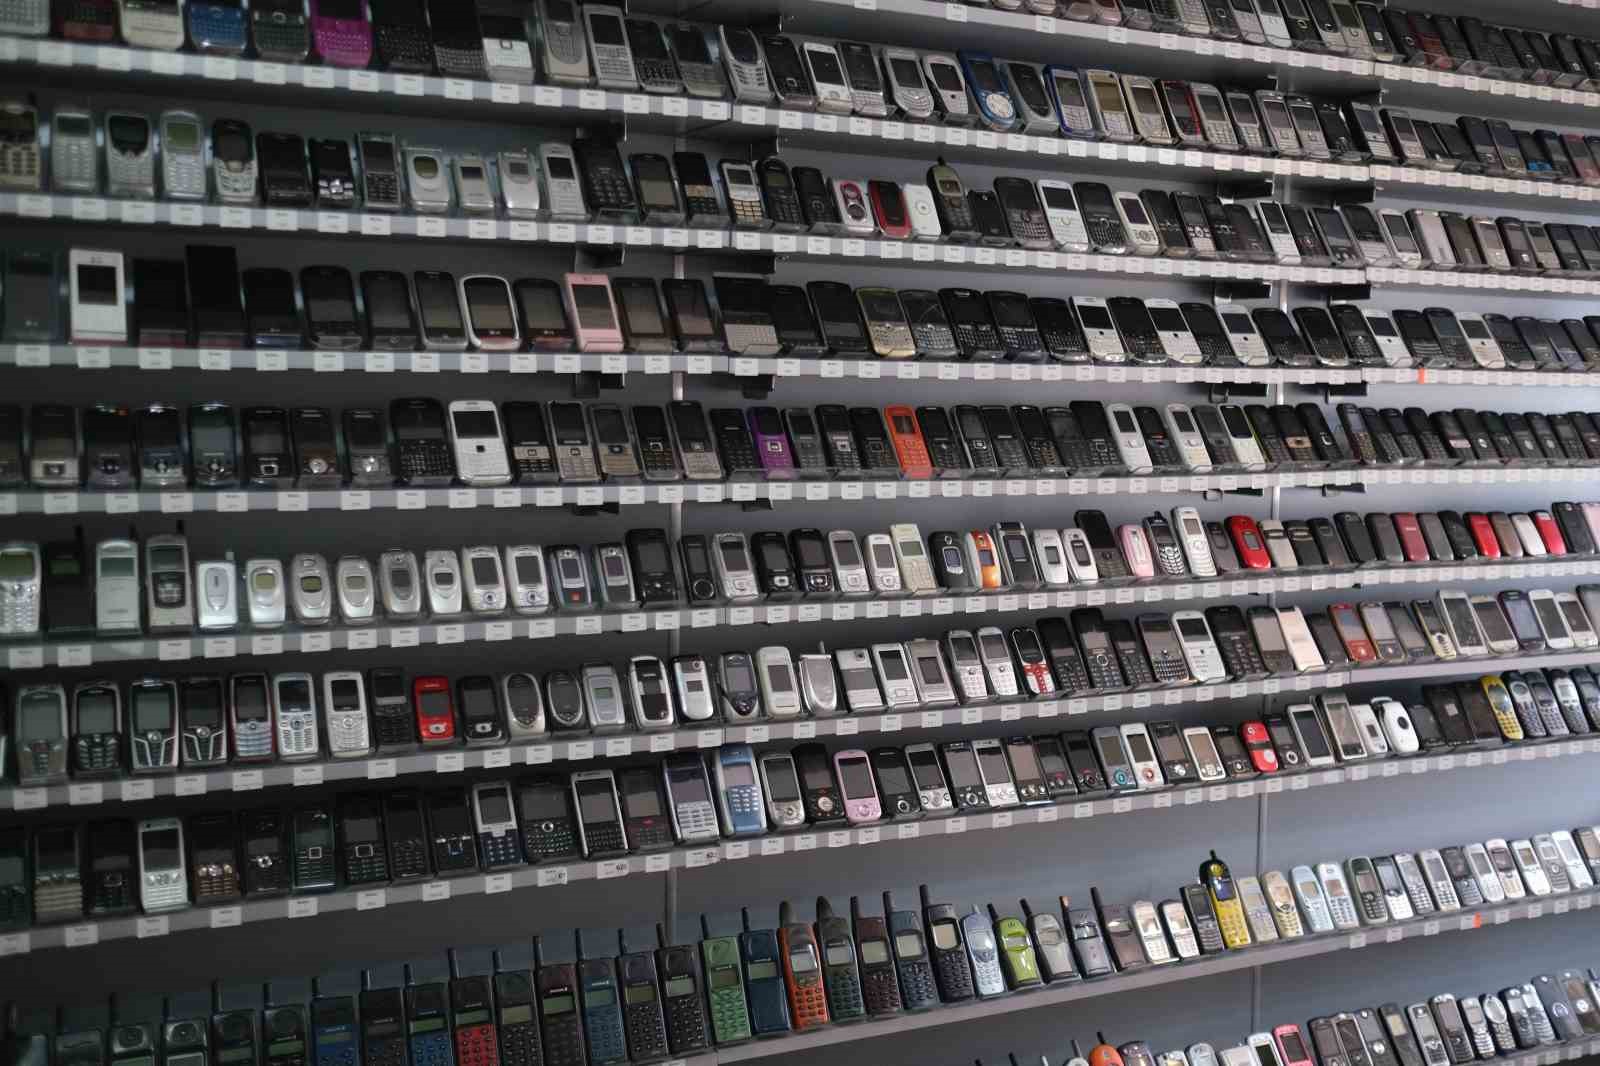 dünya rekoru kırdığı cep telefonu koleksiyonunu cem yımaz’a hediye etmek istiyor